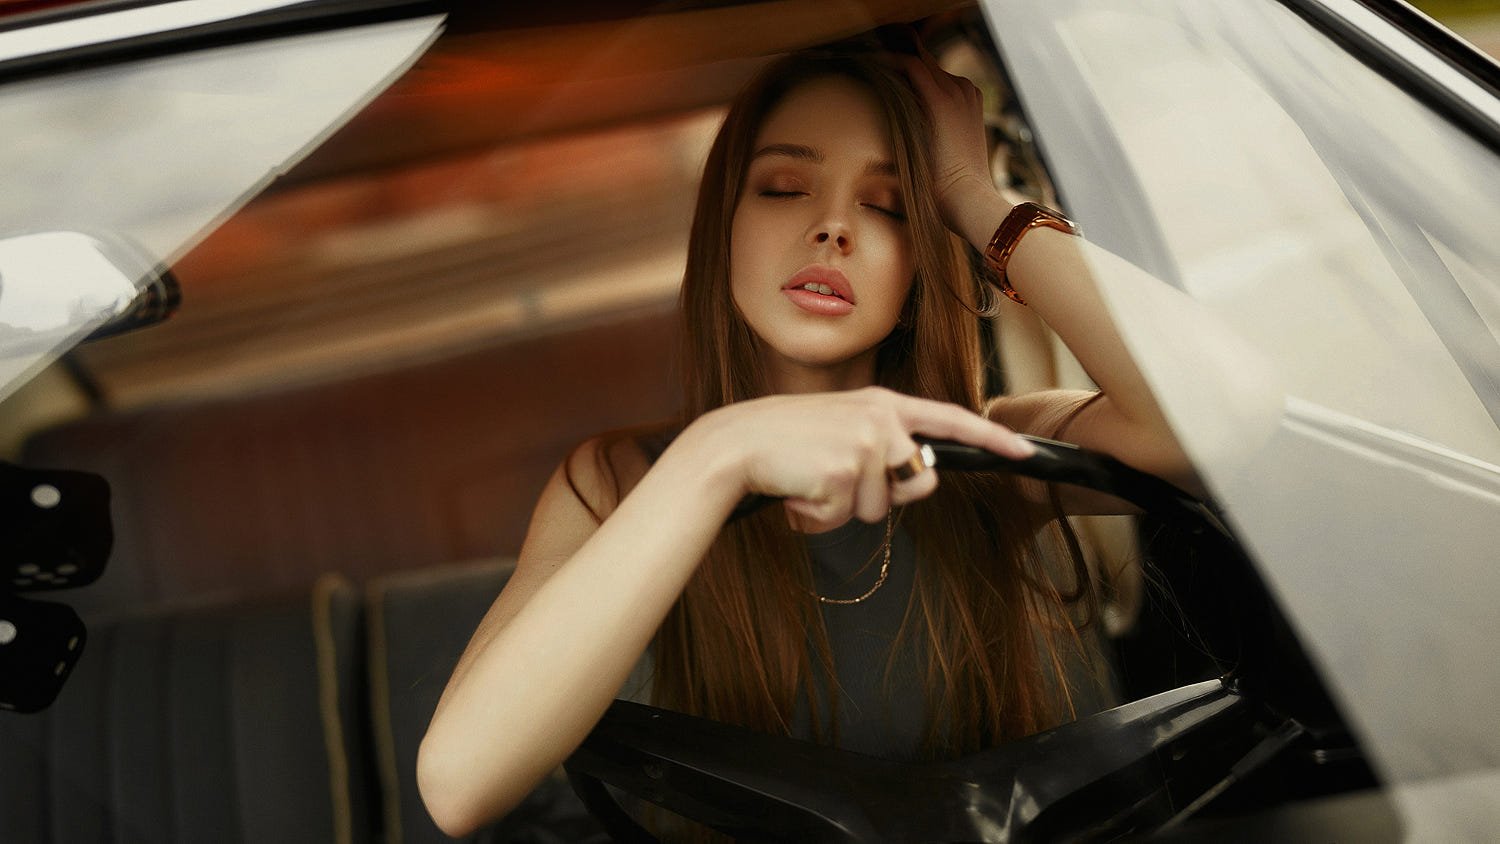 Fotos de mulheres e Carros - Modelo ao volante de olhos fechados